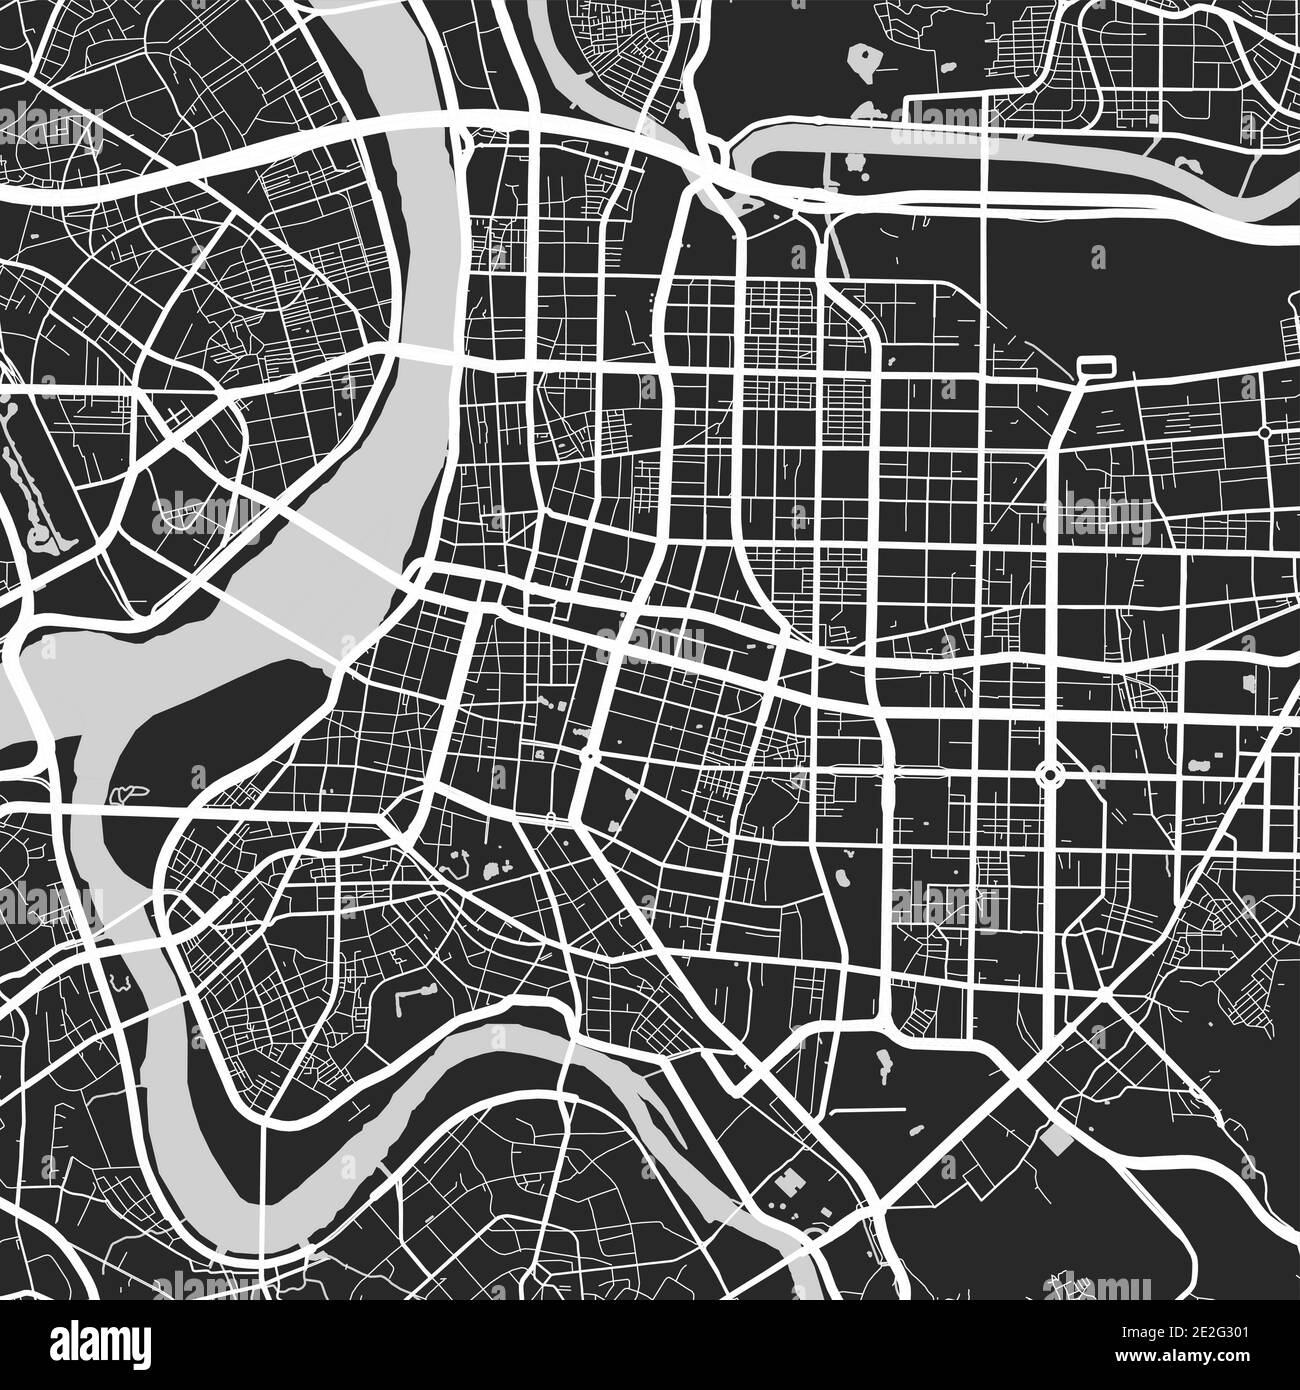 Stadtplan von Taipei. Vektor-Illustration, Taipei Karte Graustufen Kunst Poster. Straßenkarte mit Straßen, Ansicht der Metropolregion. Stock Vektor